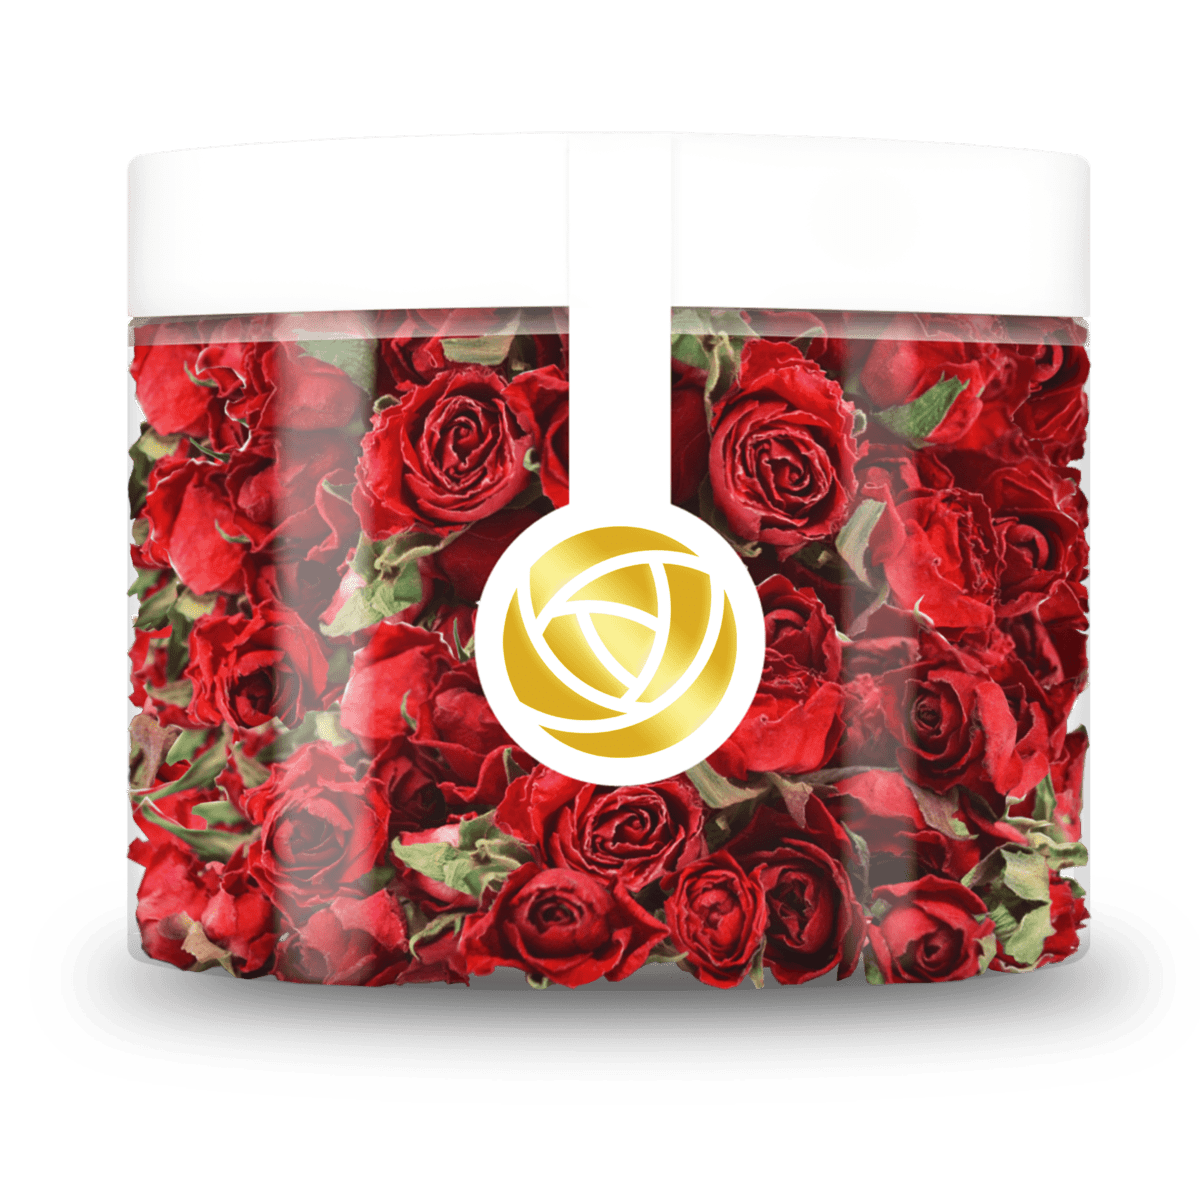 Verleihen Sie Ihren Torten und Gebäcken mit unseren essbaren Red Cherry Blüten eine besondere Note. Unsere getrockneten Red Cherry Rosenblüten setzen einzigartige Akzente bei der Dekoration Ihrer Torte und sind perfekt für eine schöne und köstliche Torte. Von ROSIE ROSE im Online-Shop kaufen